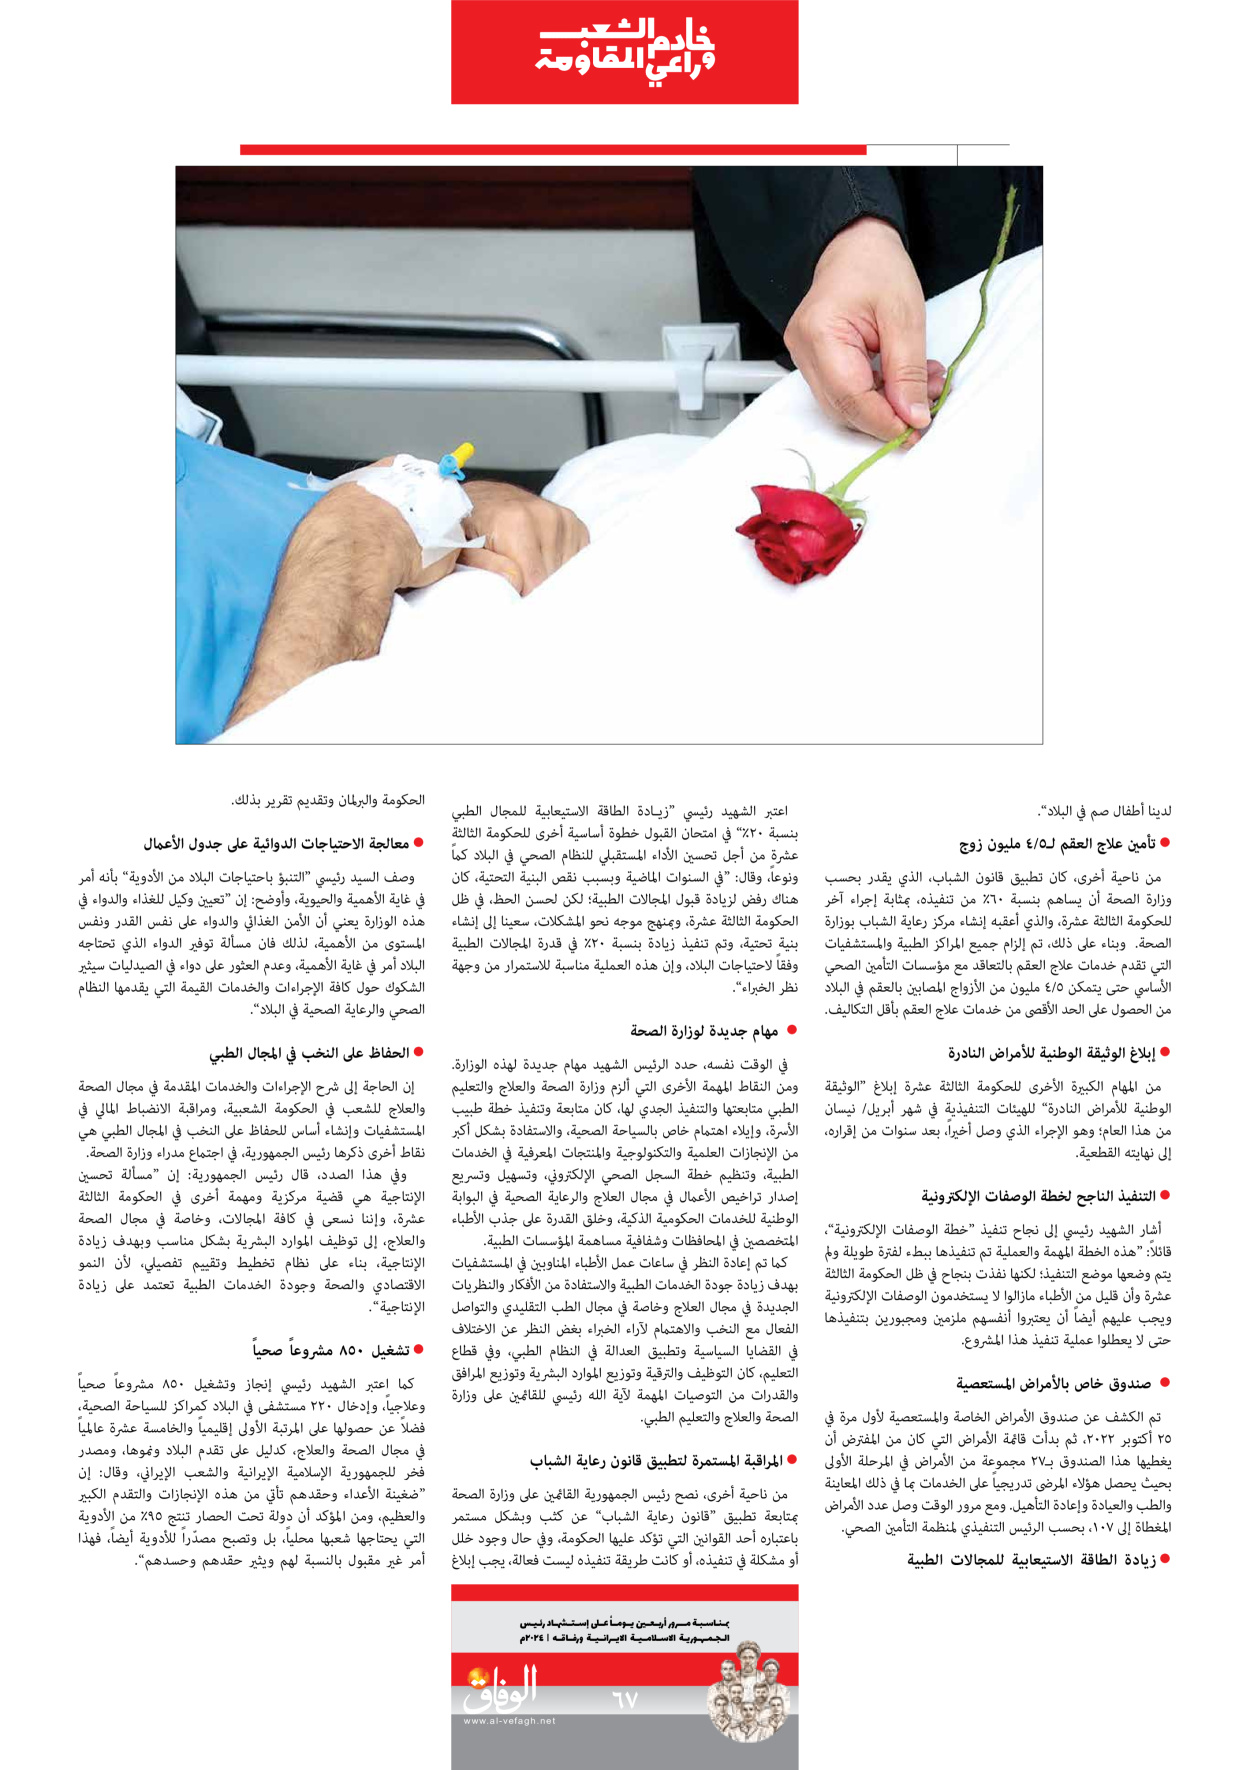 صحیفة ایران الدولیة الوفاق - ملحق ویژه نامه چهلم شهید رییسی - ٢٩ يونيو ٢٠٢٤ - الصفحة ٦۷